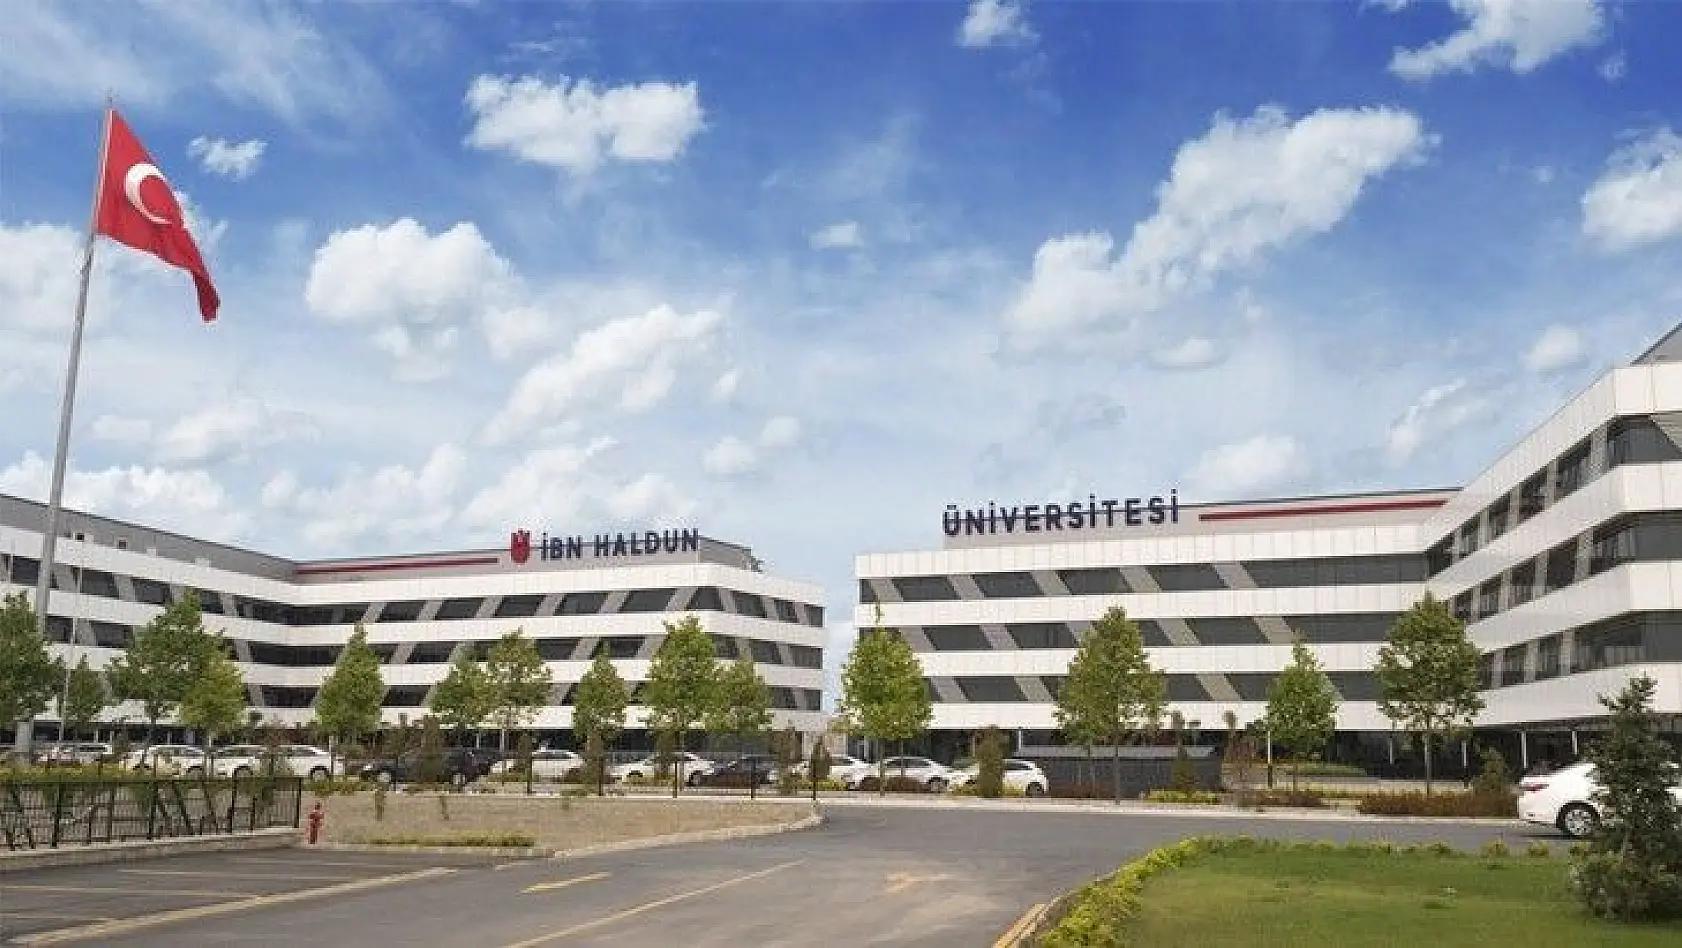 İbn Haldun Üniversitesi Öğretim Üyesi alım ilanı